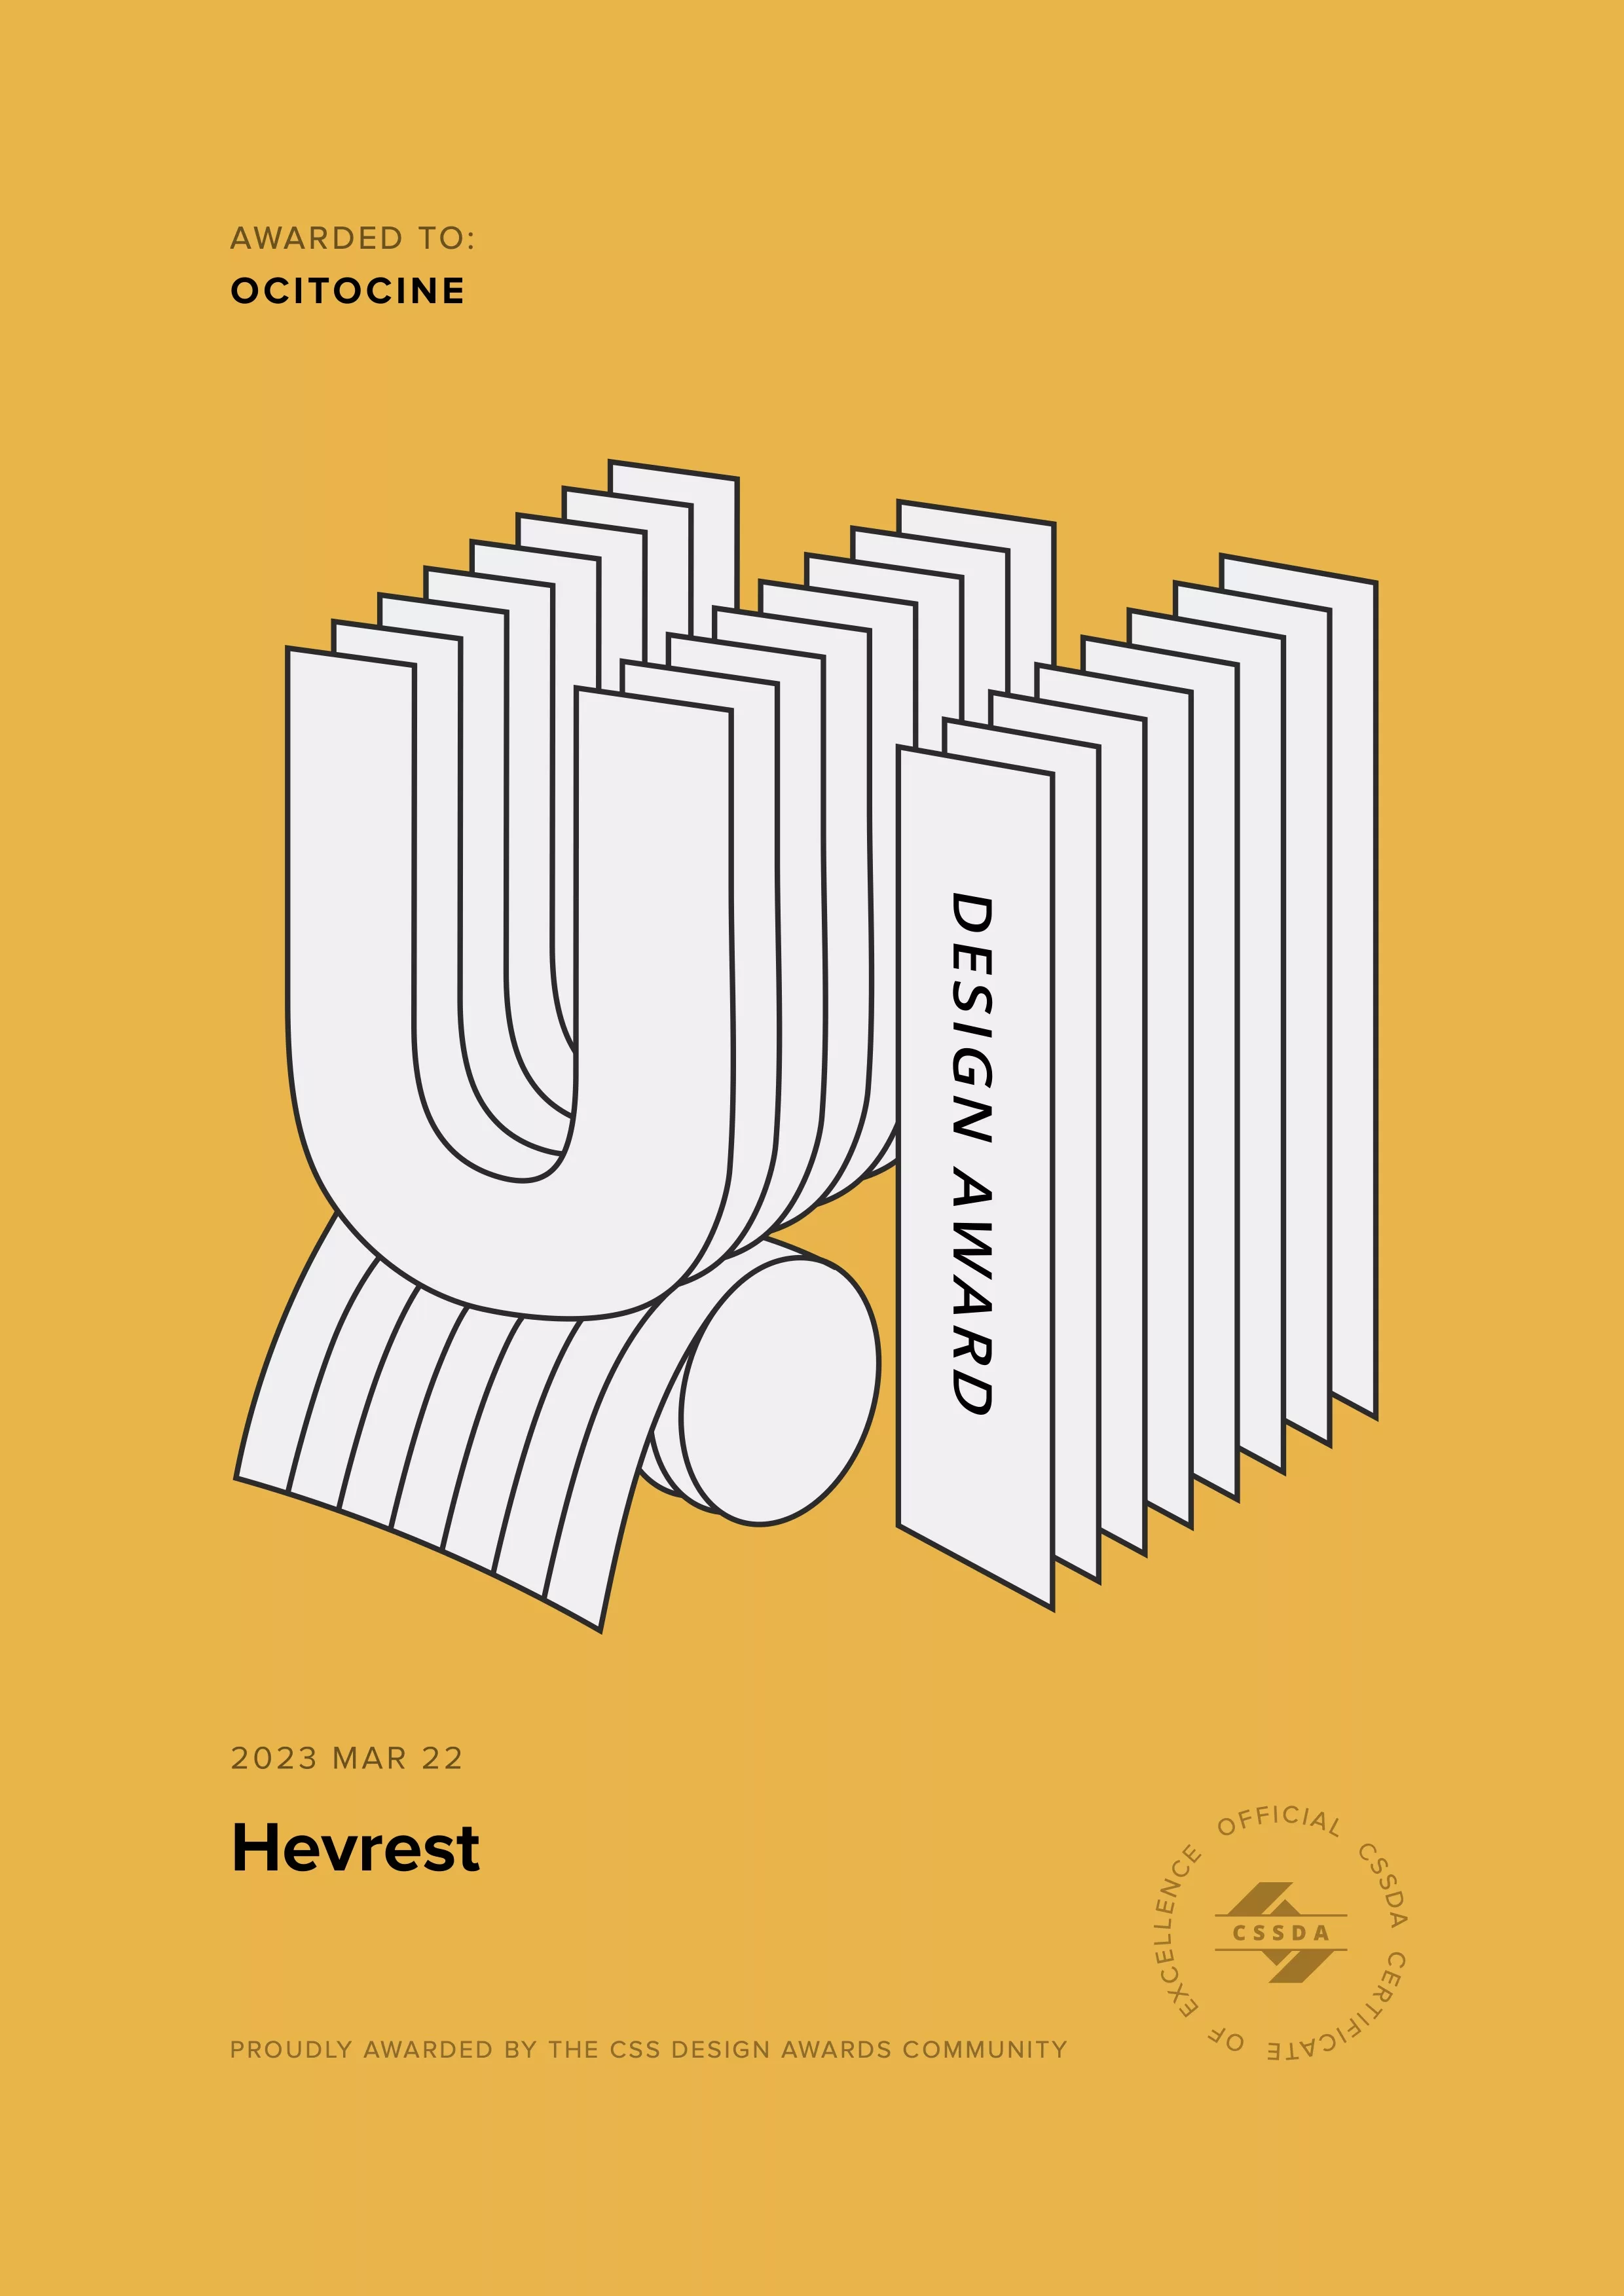 Ocitocine, agence créative web et branding, a remporté un prix "CSSDA UI Design Award" pour la réalisation du site web hevrest.com